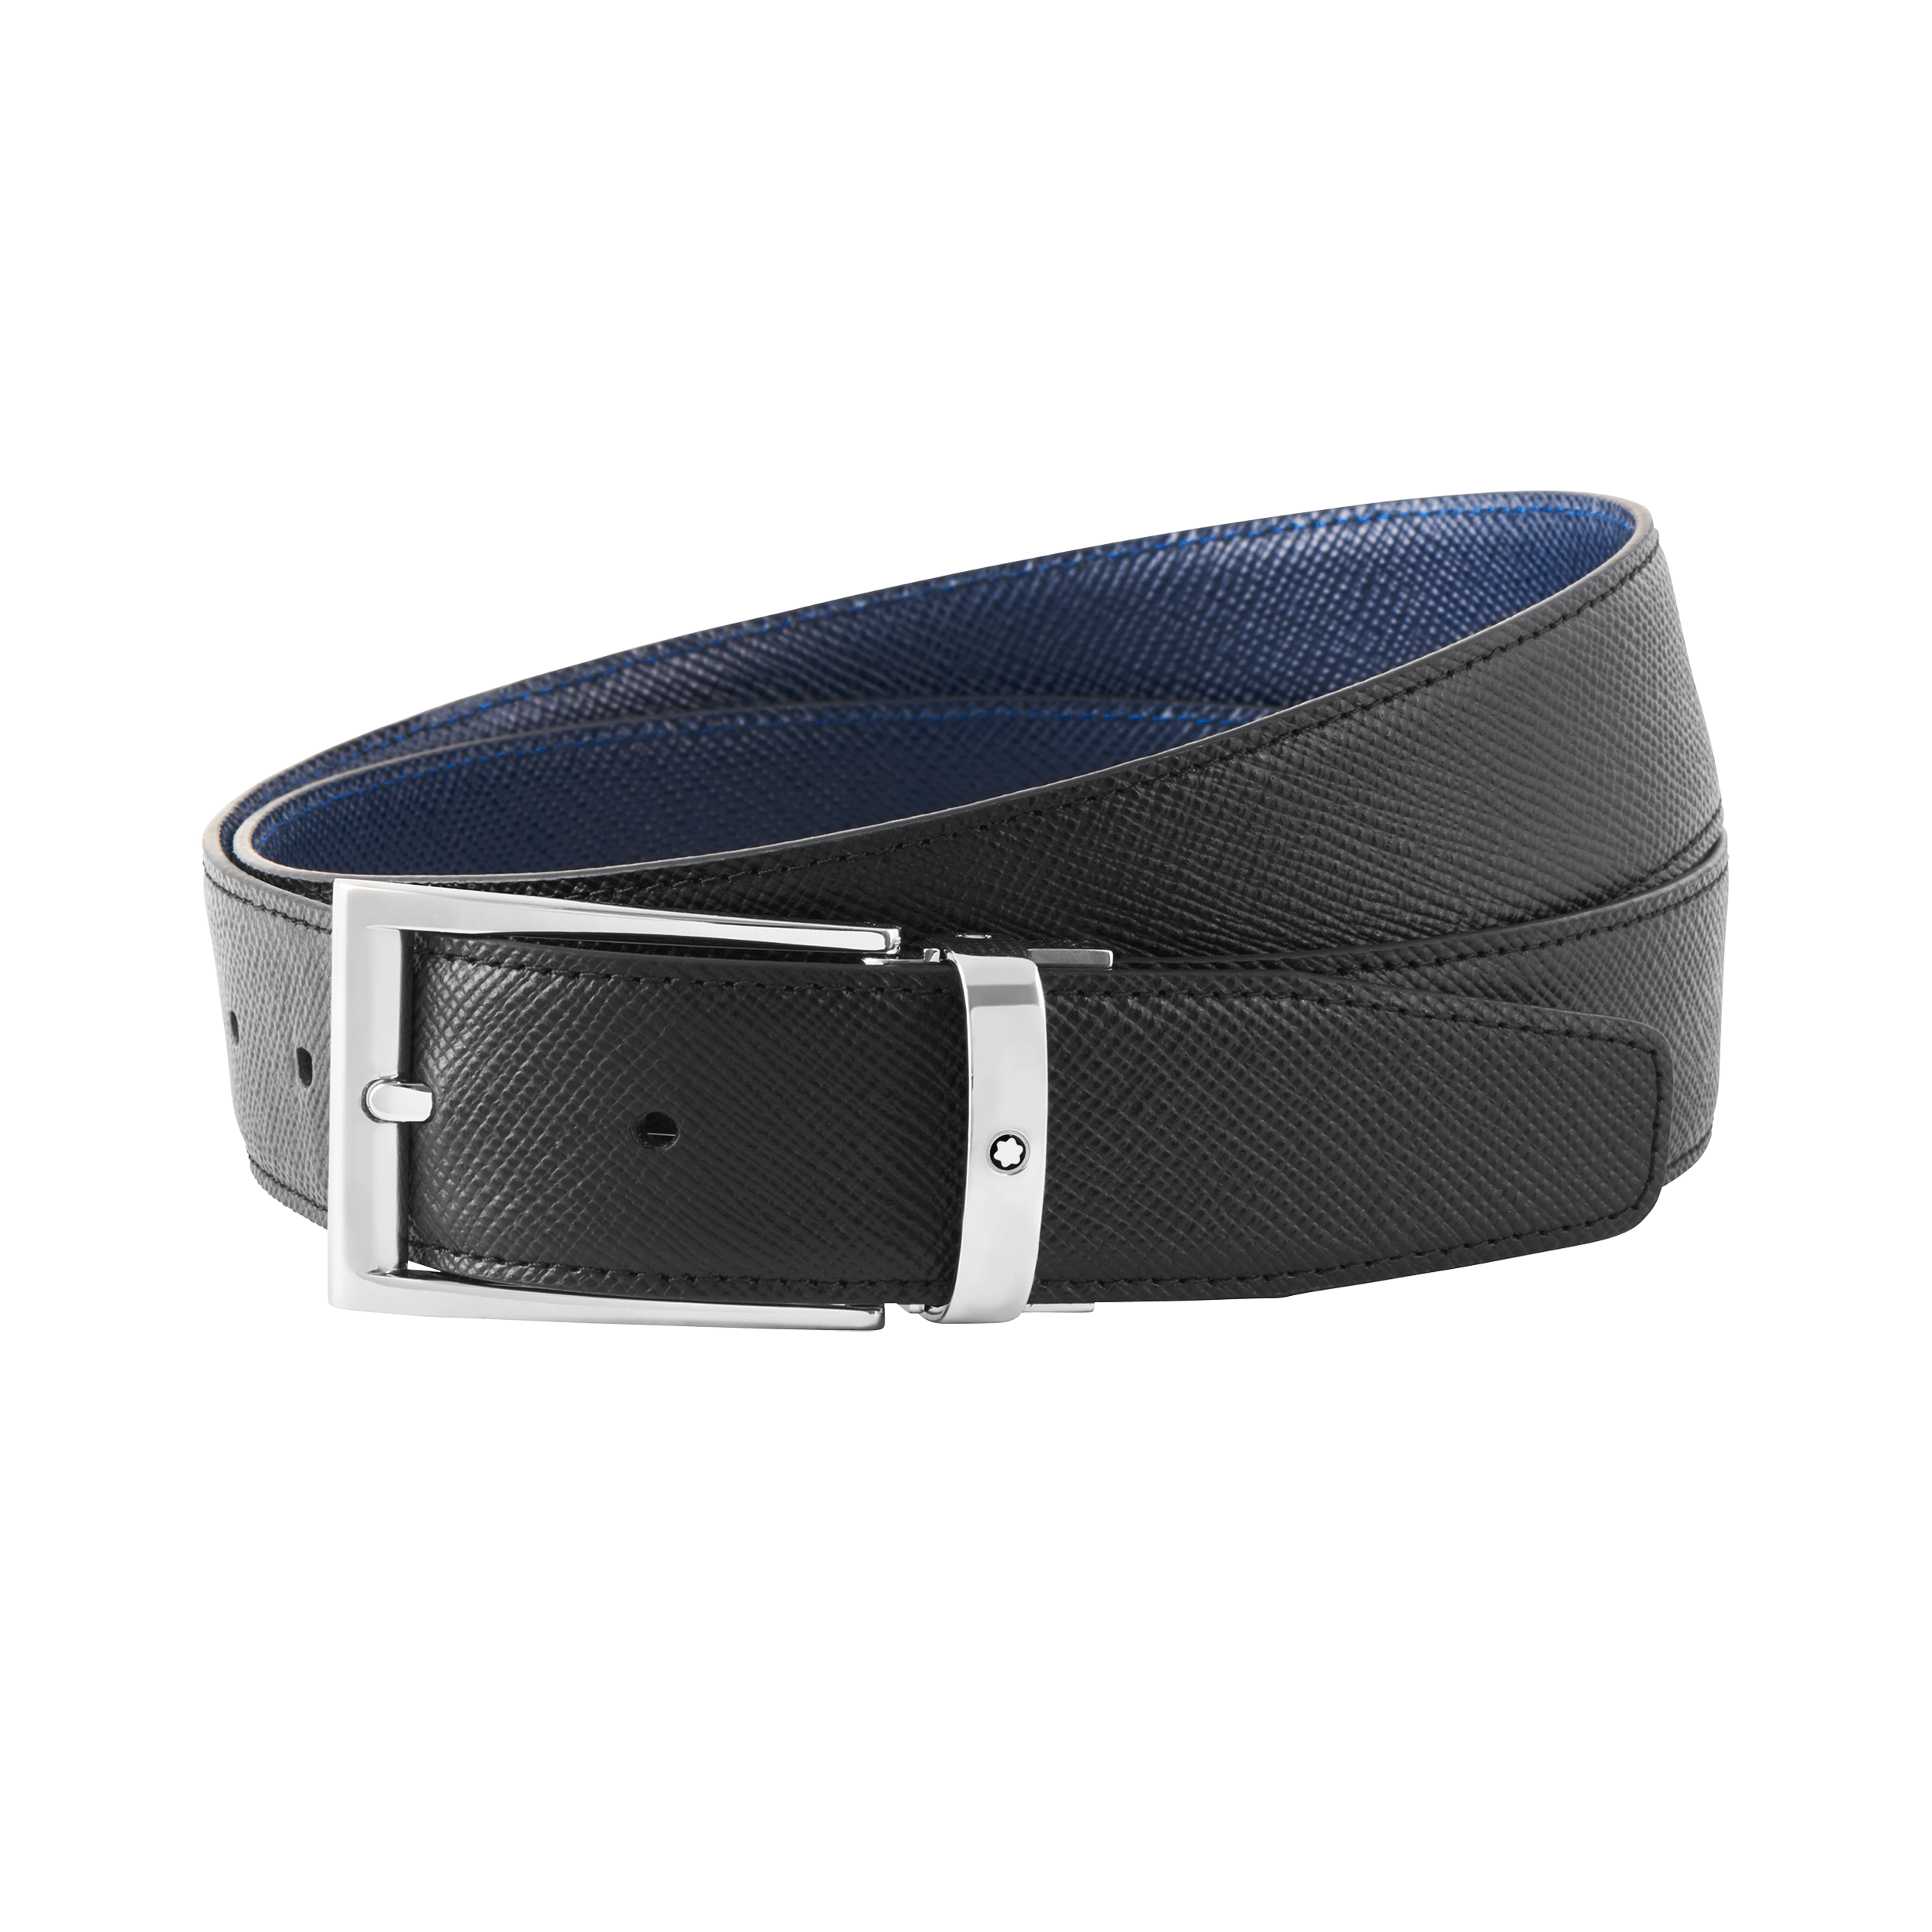 Black/blue 35 mm reversible leather belt